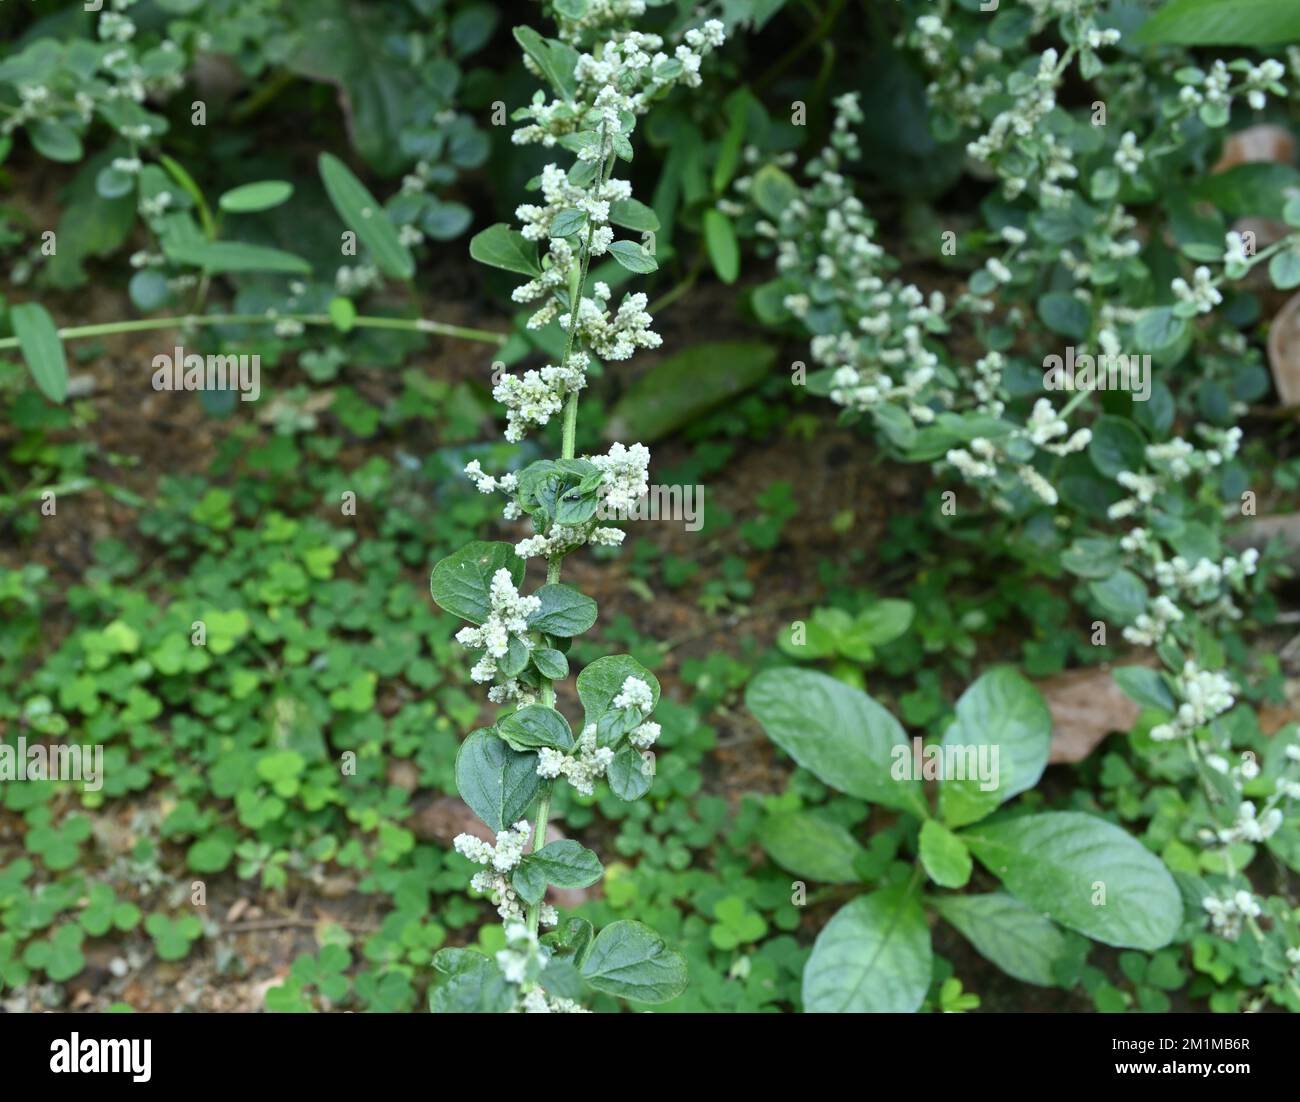 A flowering Mountain Knotgrass branch (Aerva Lanata) in the garden Stock Photo